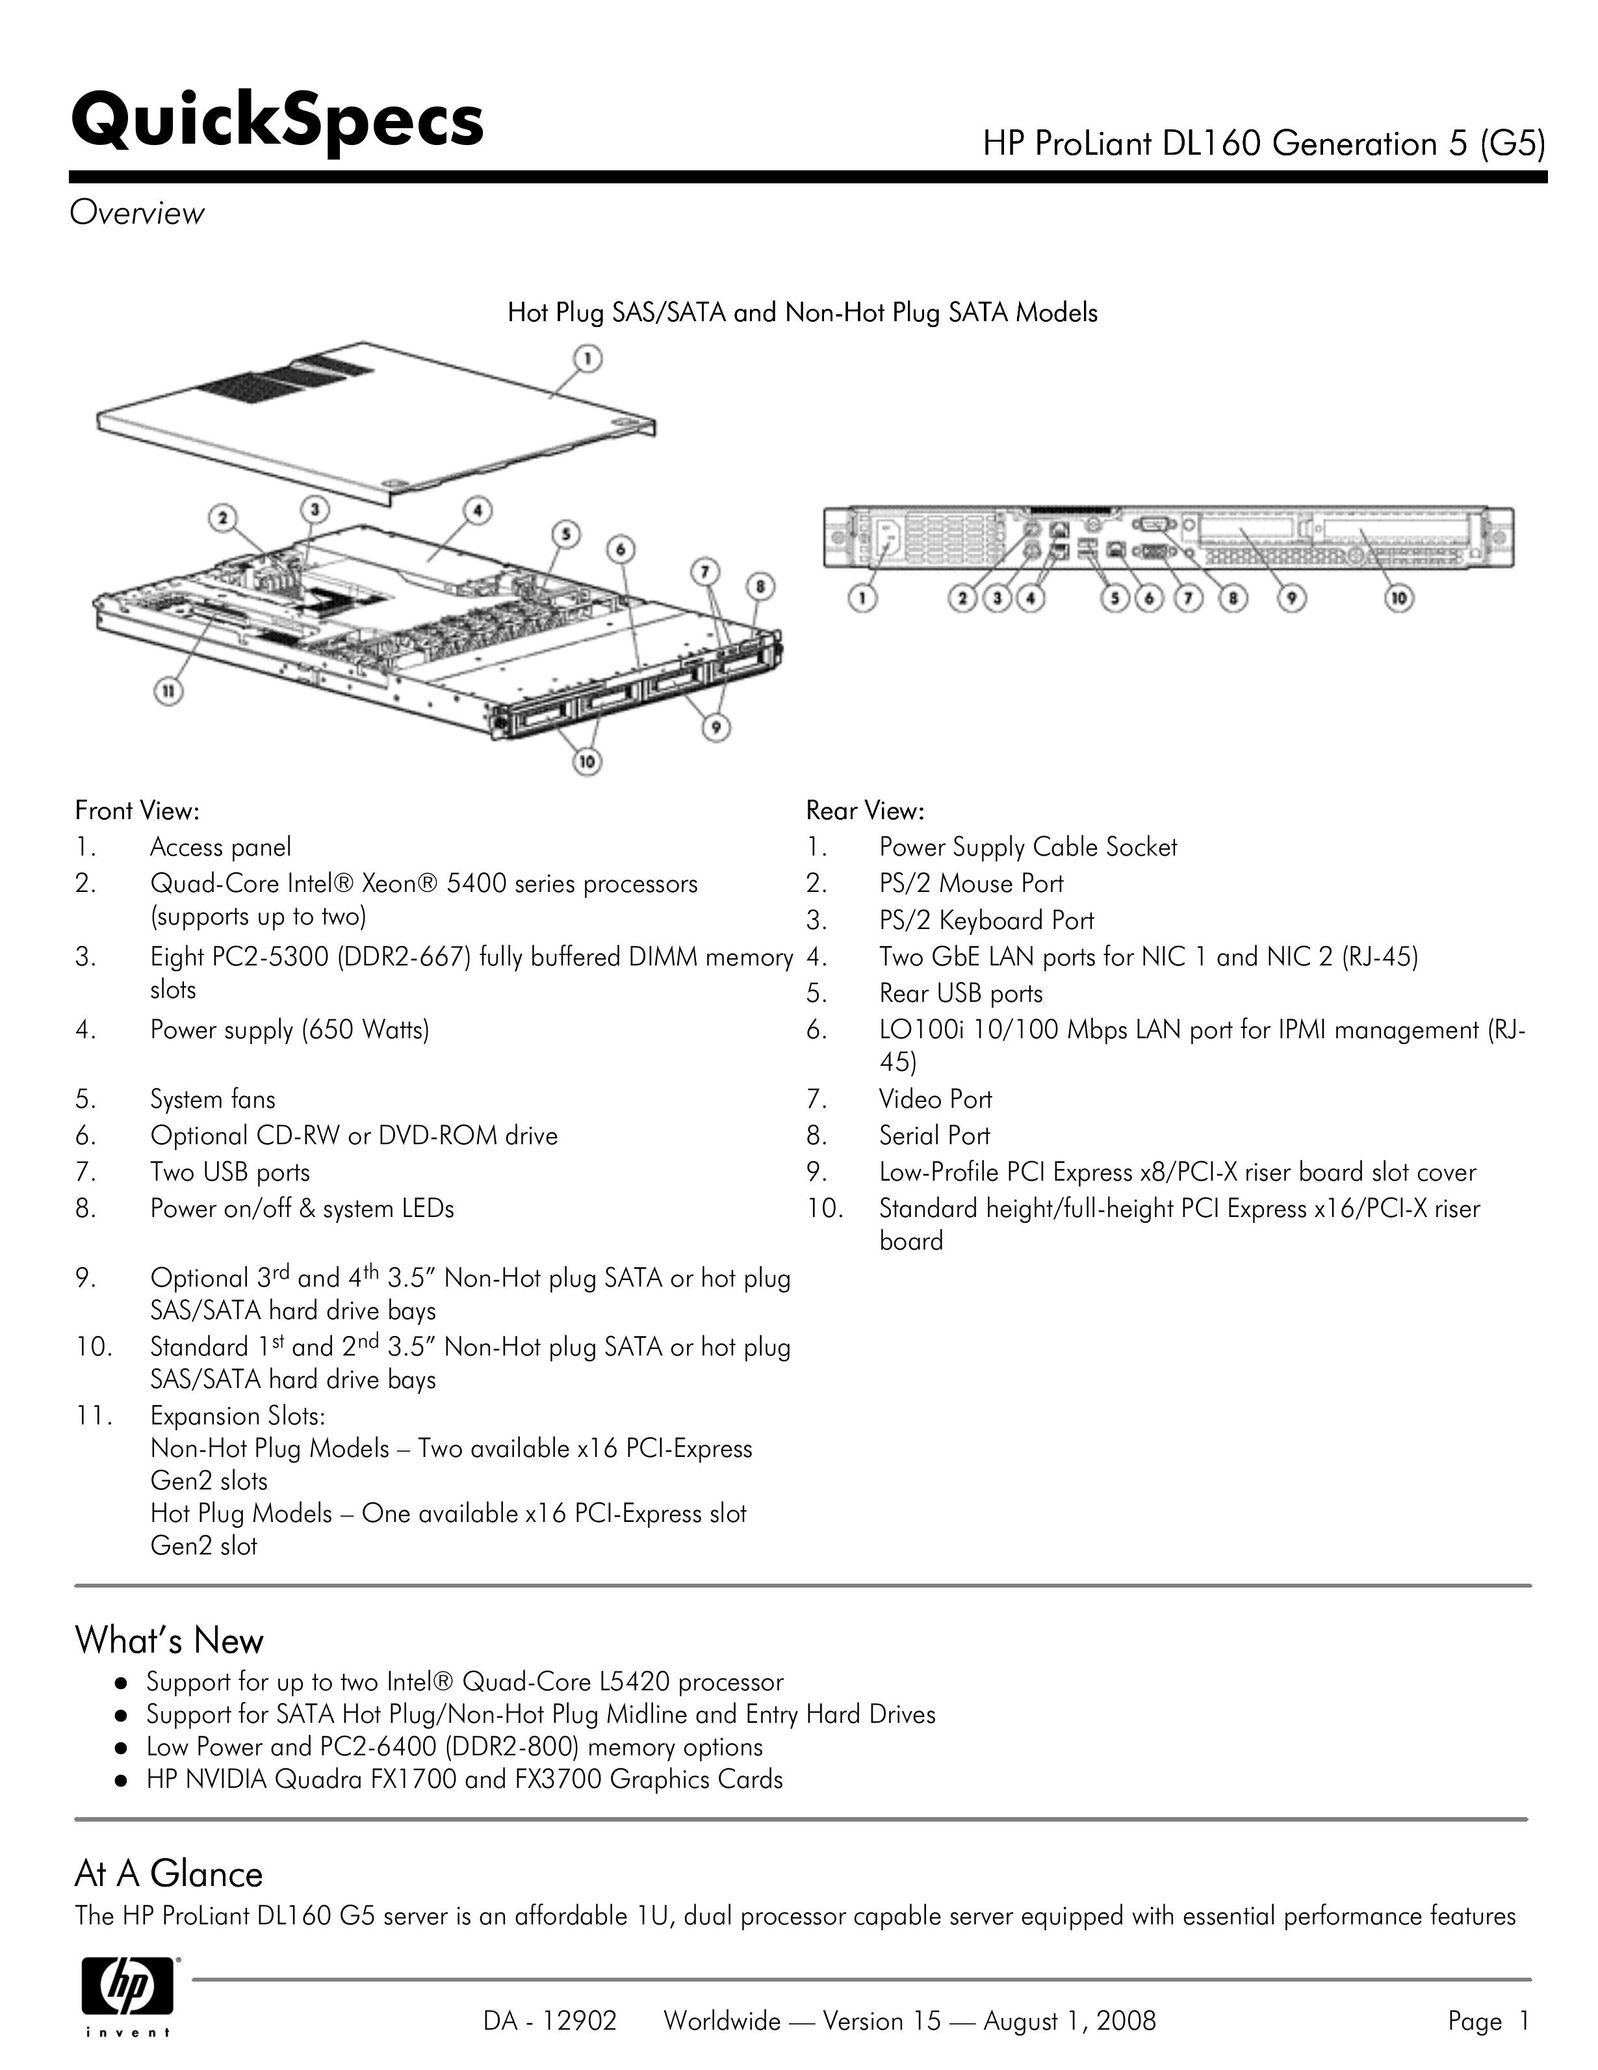 HP (Hewlett-Packard) DL160 Computer Hardware User Manual